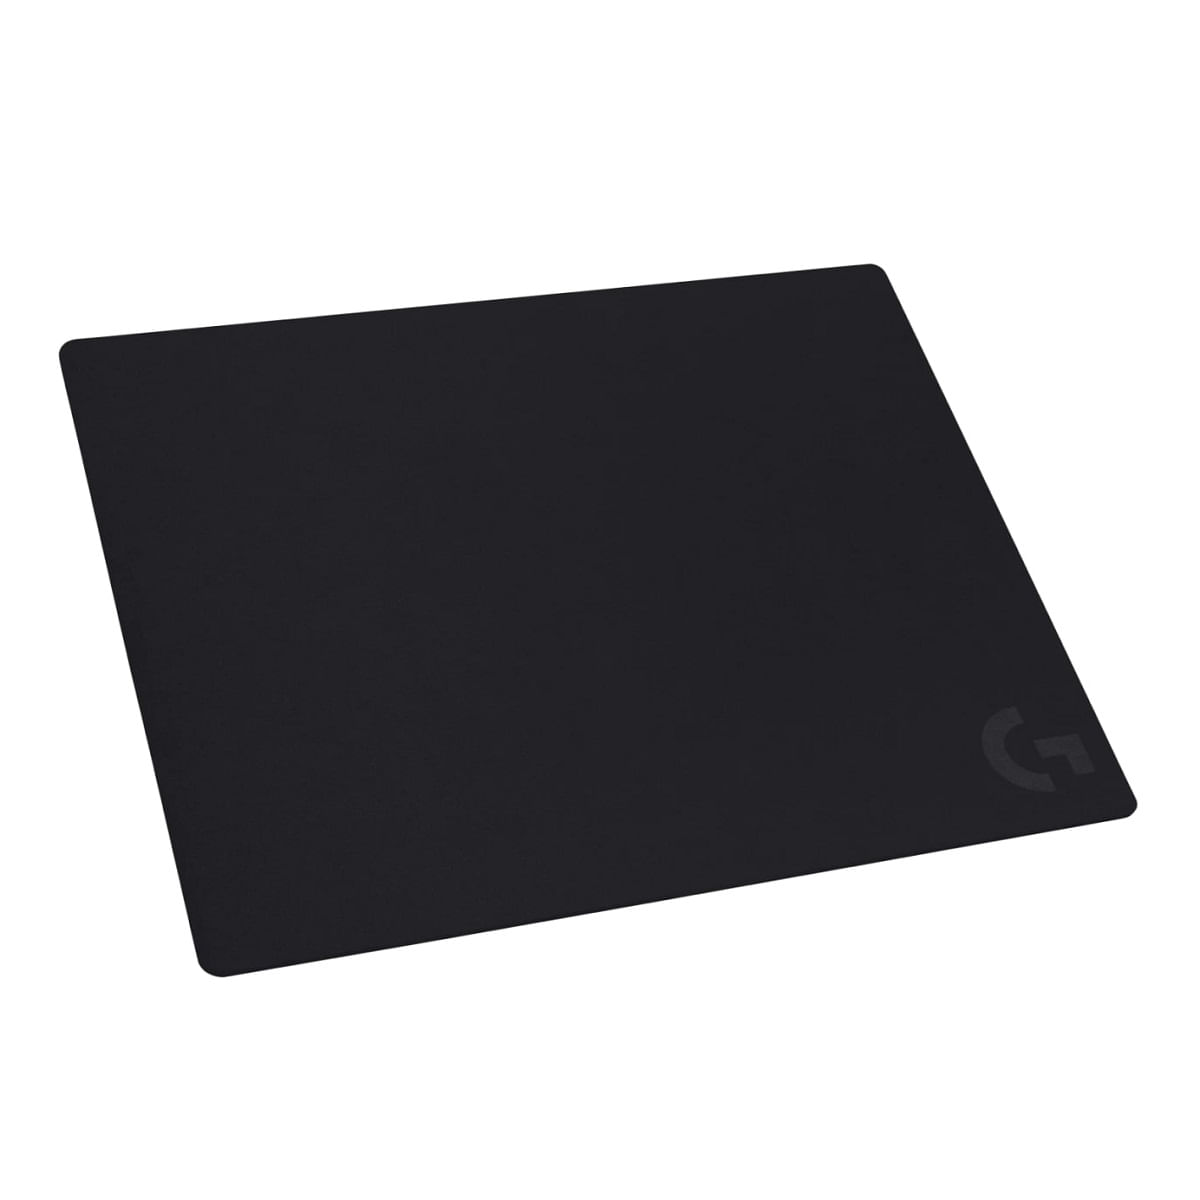 Mousepad Logitech G640 Black Large 46cm x 40cm